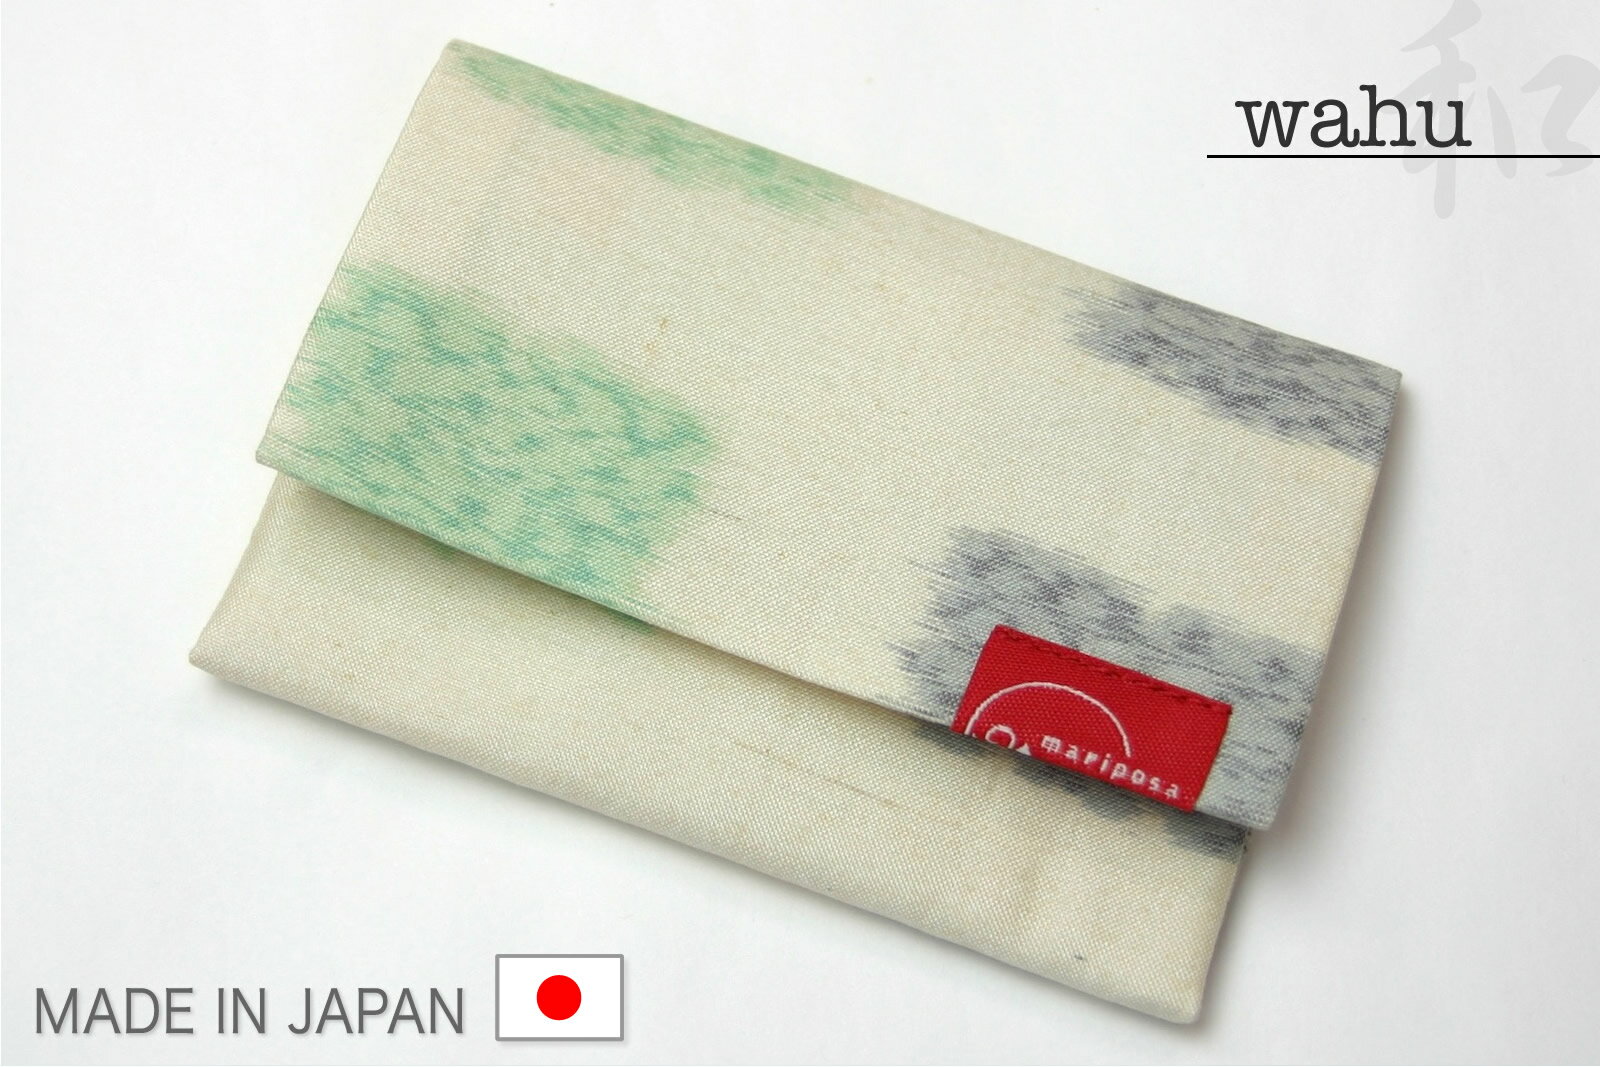 【日本製】名刺入れ カードケース 着物地 帯地 浴衣地 かわいい おしゃれ メール便可